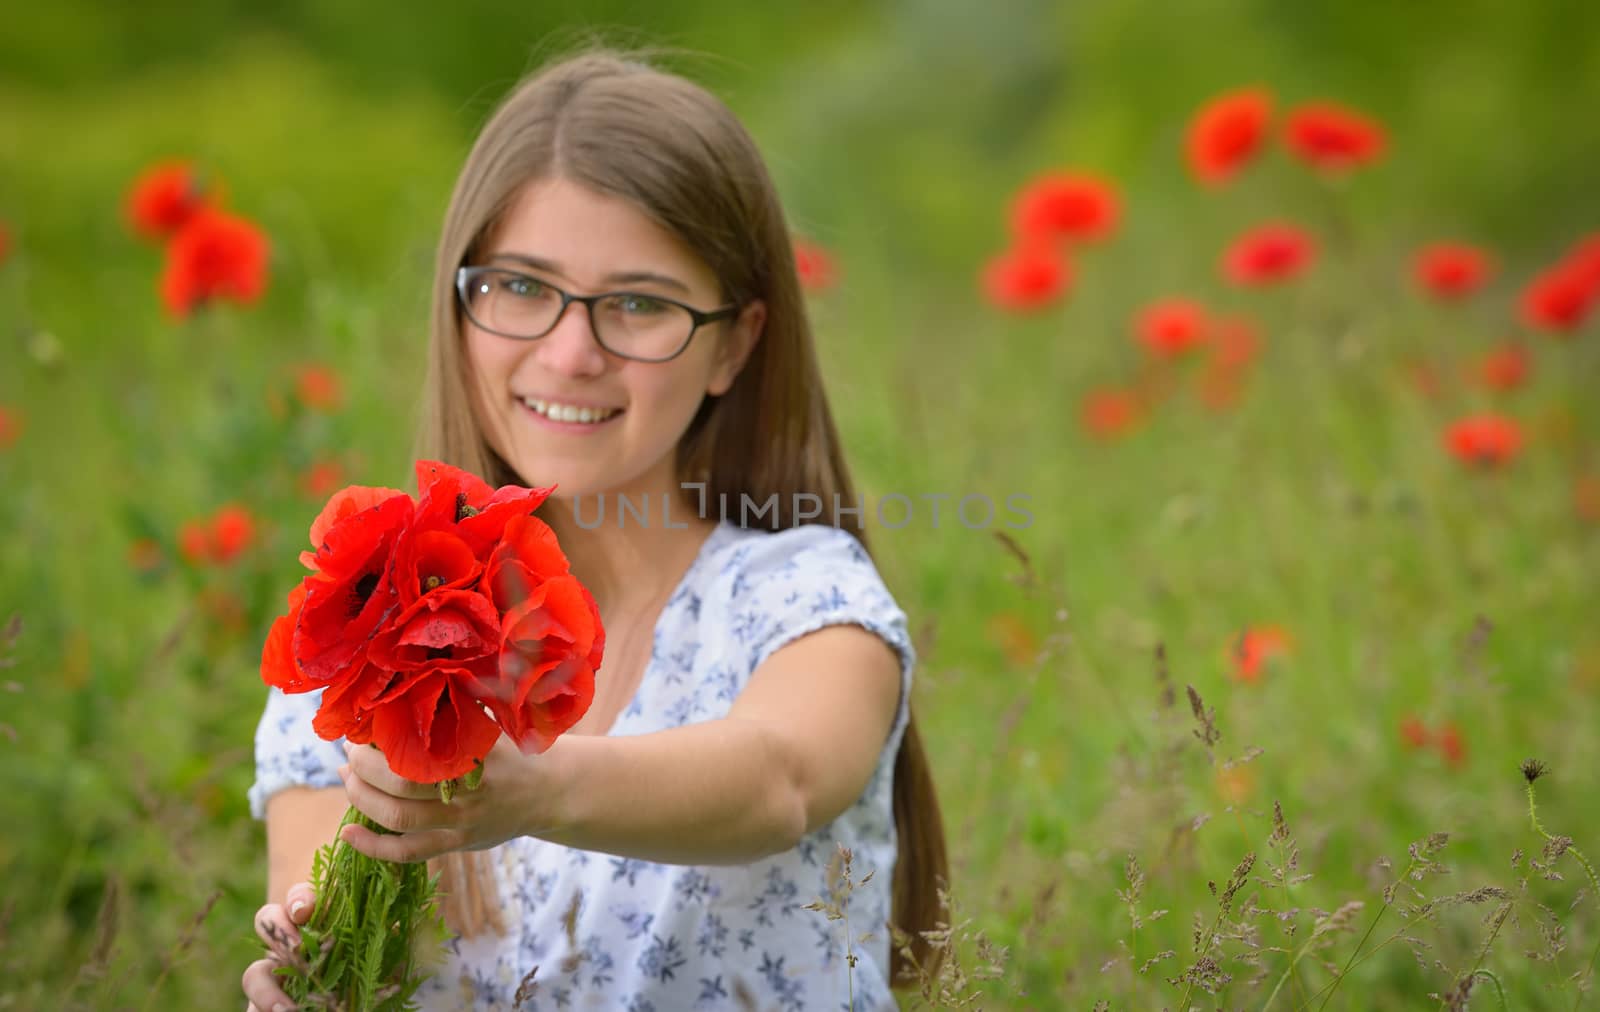 Young girl in a poppy field by jordachelr